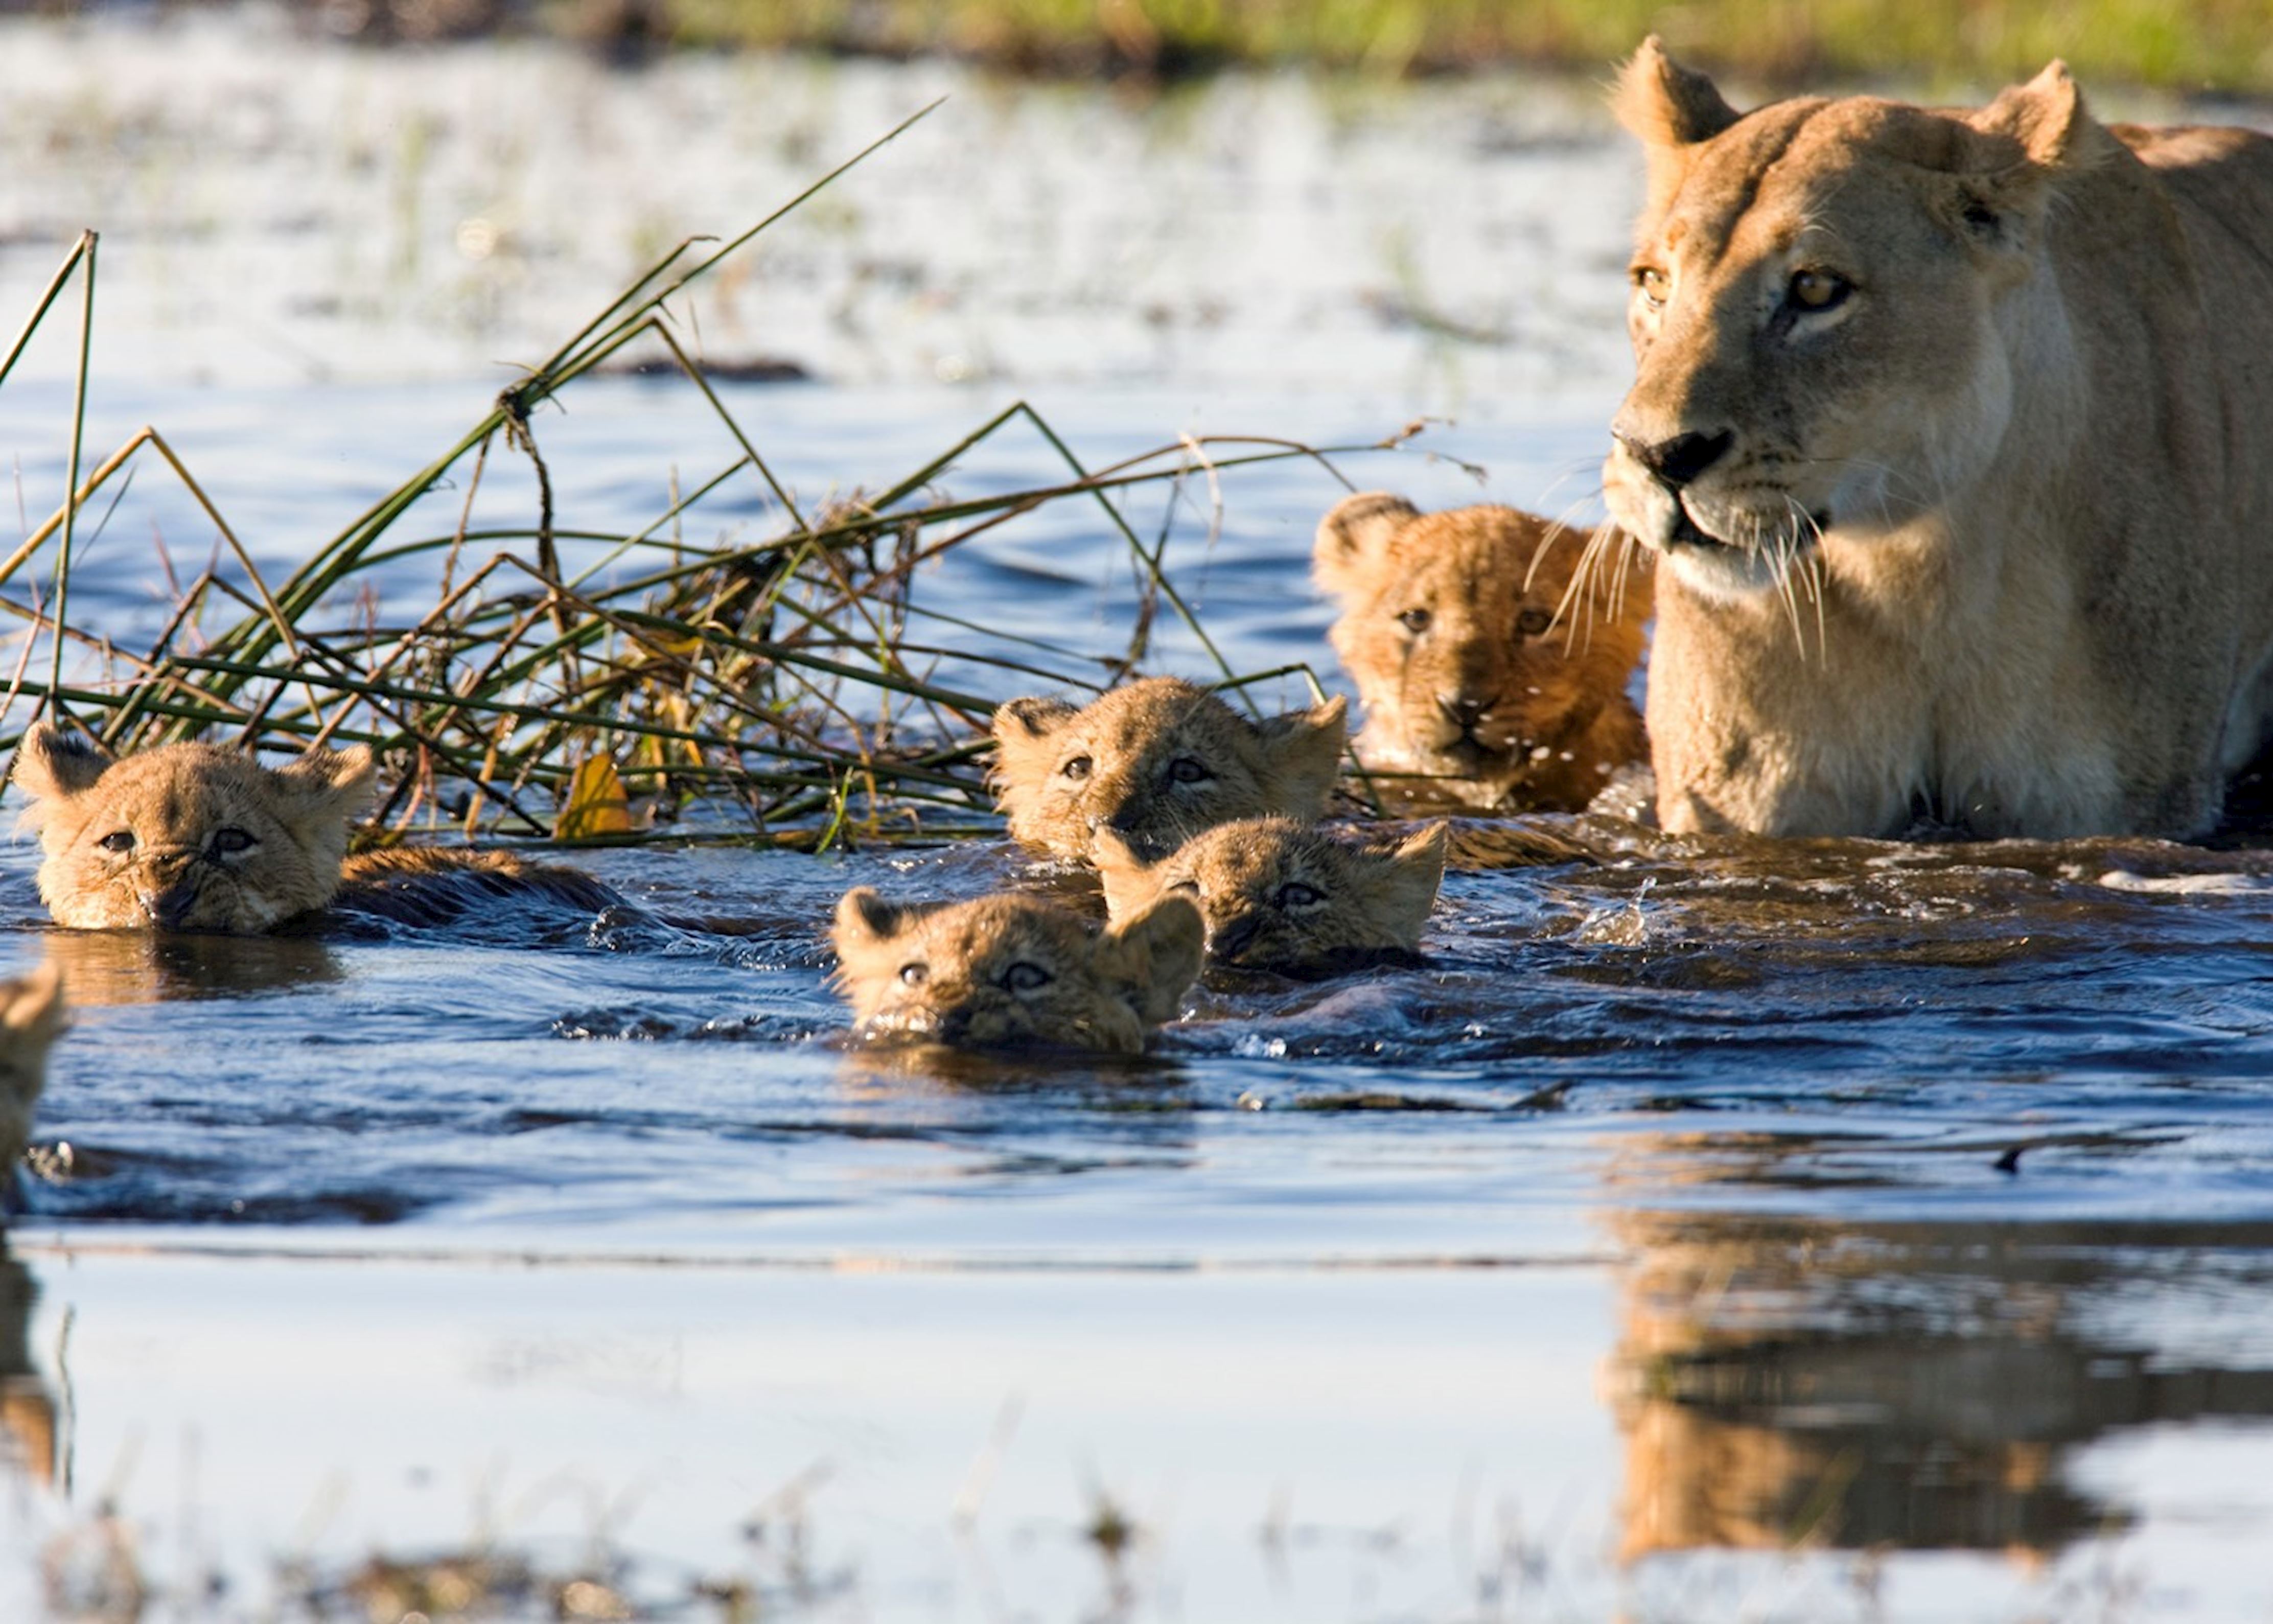 Wildlife watching. Хищные животные. Львица и львёнок в речке. Львенок купается в воде. Гепарды переплывают реку.